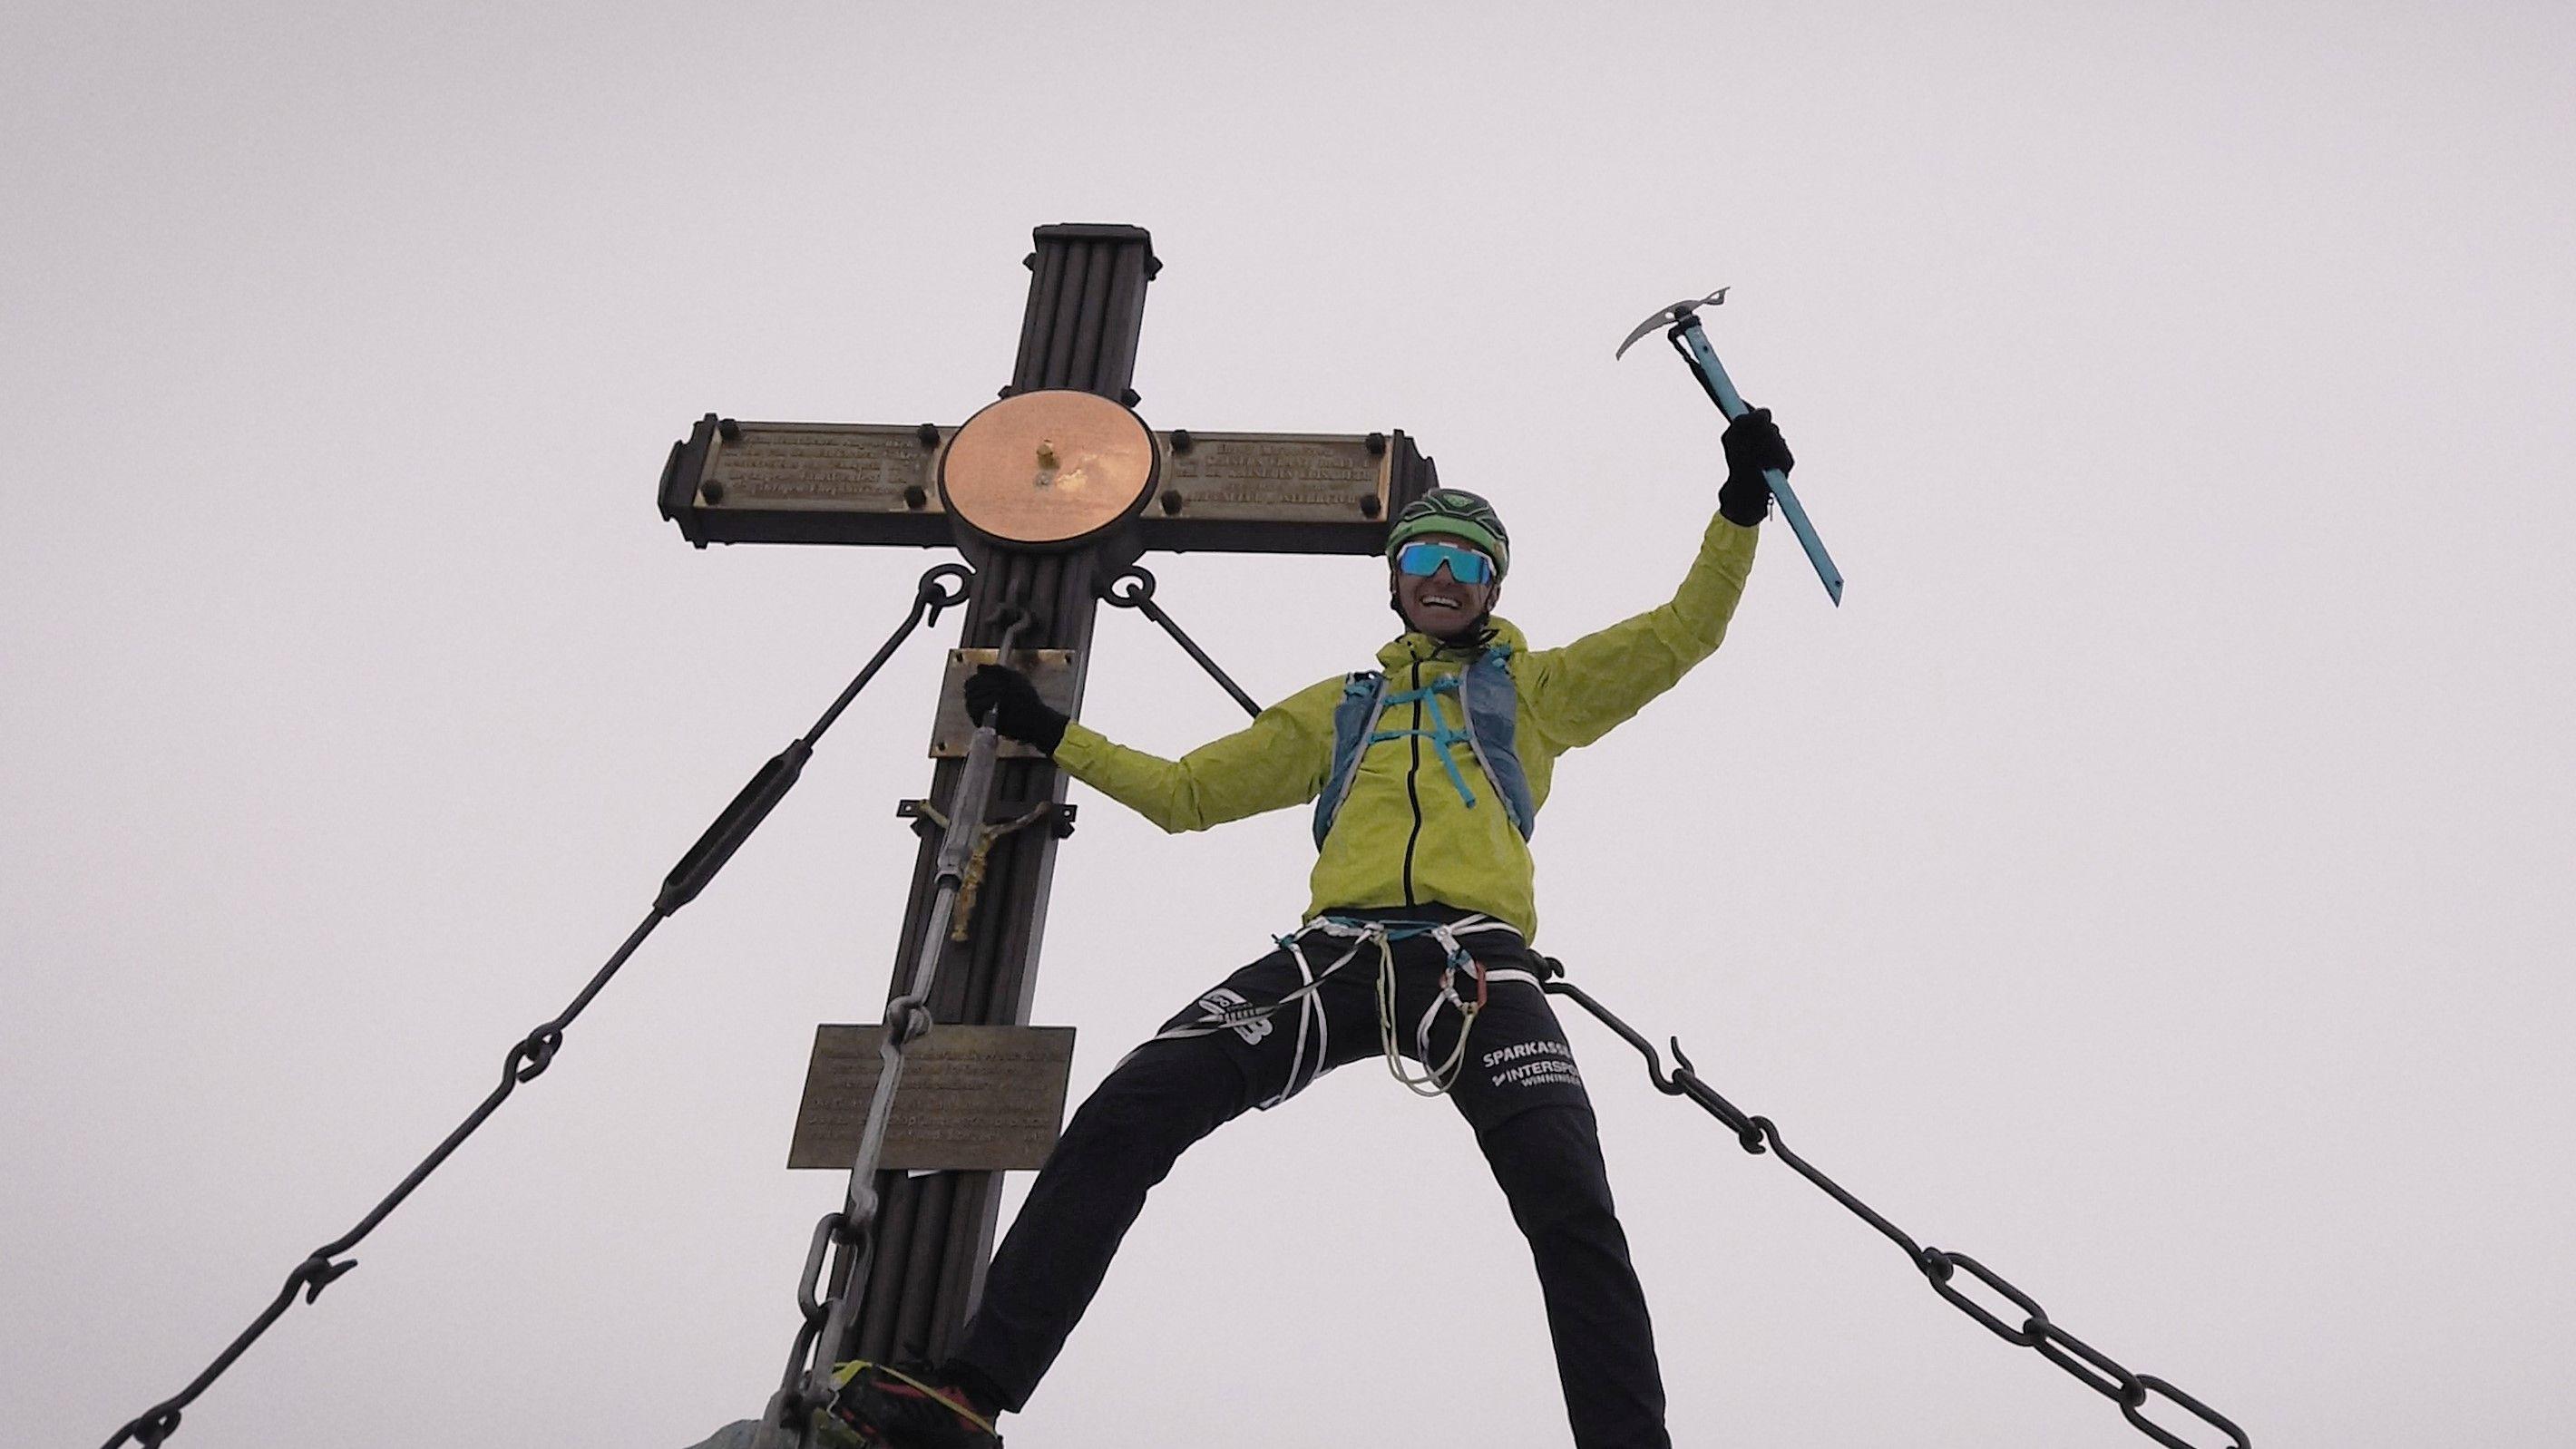 Feuerwehrmann kämpfte sich vom tiefsten zum höchsten Punkt Österreichs